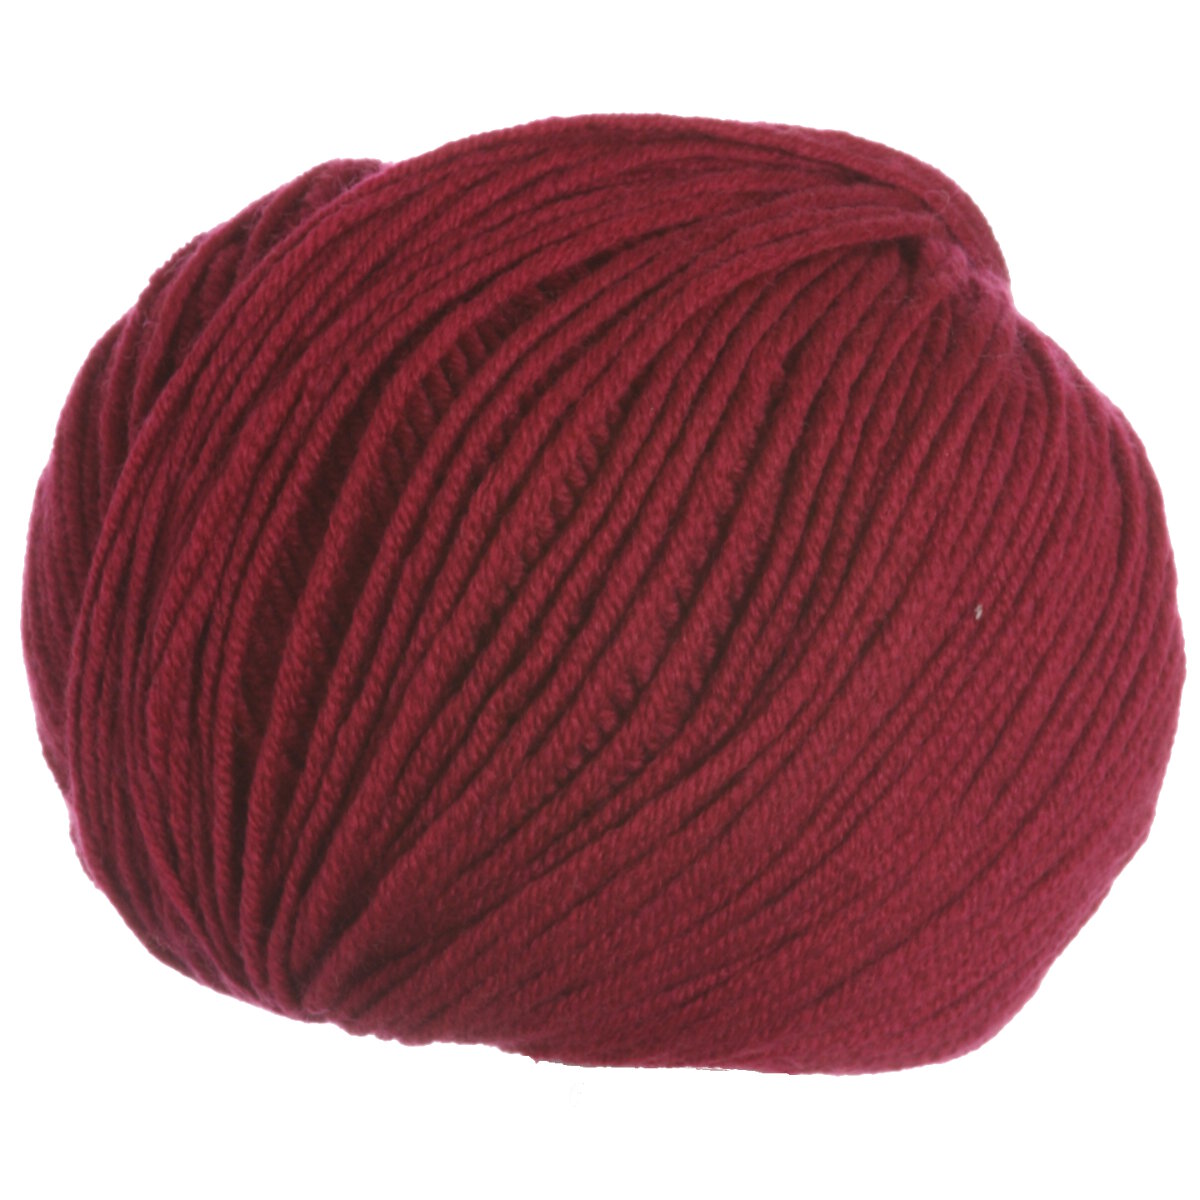 Filatura Di Crosa Zara Yarn - 1493 Crimson at Jimmy Beans Wool